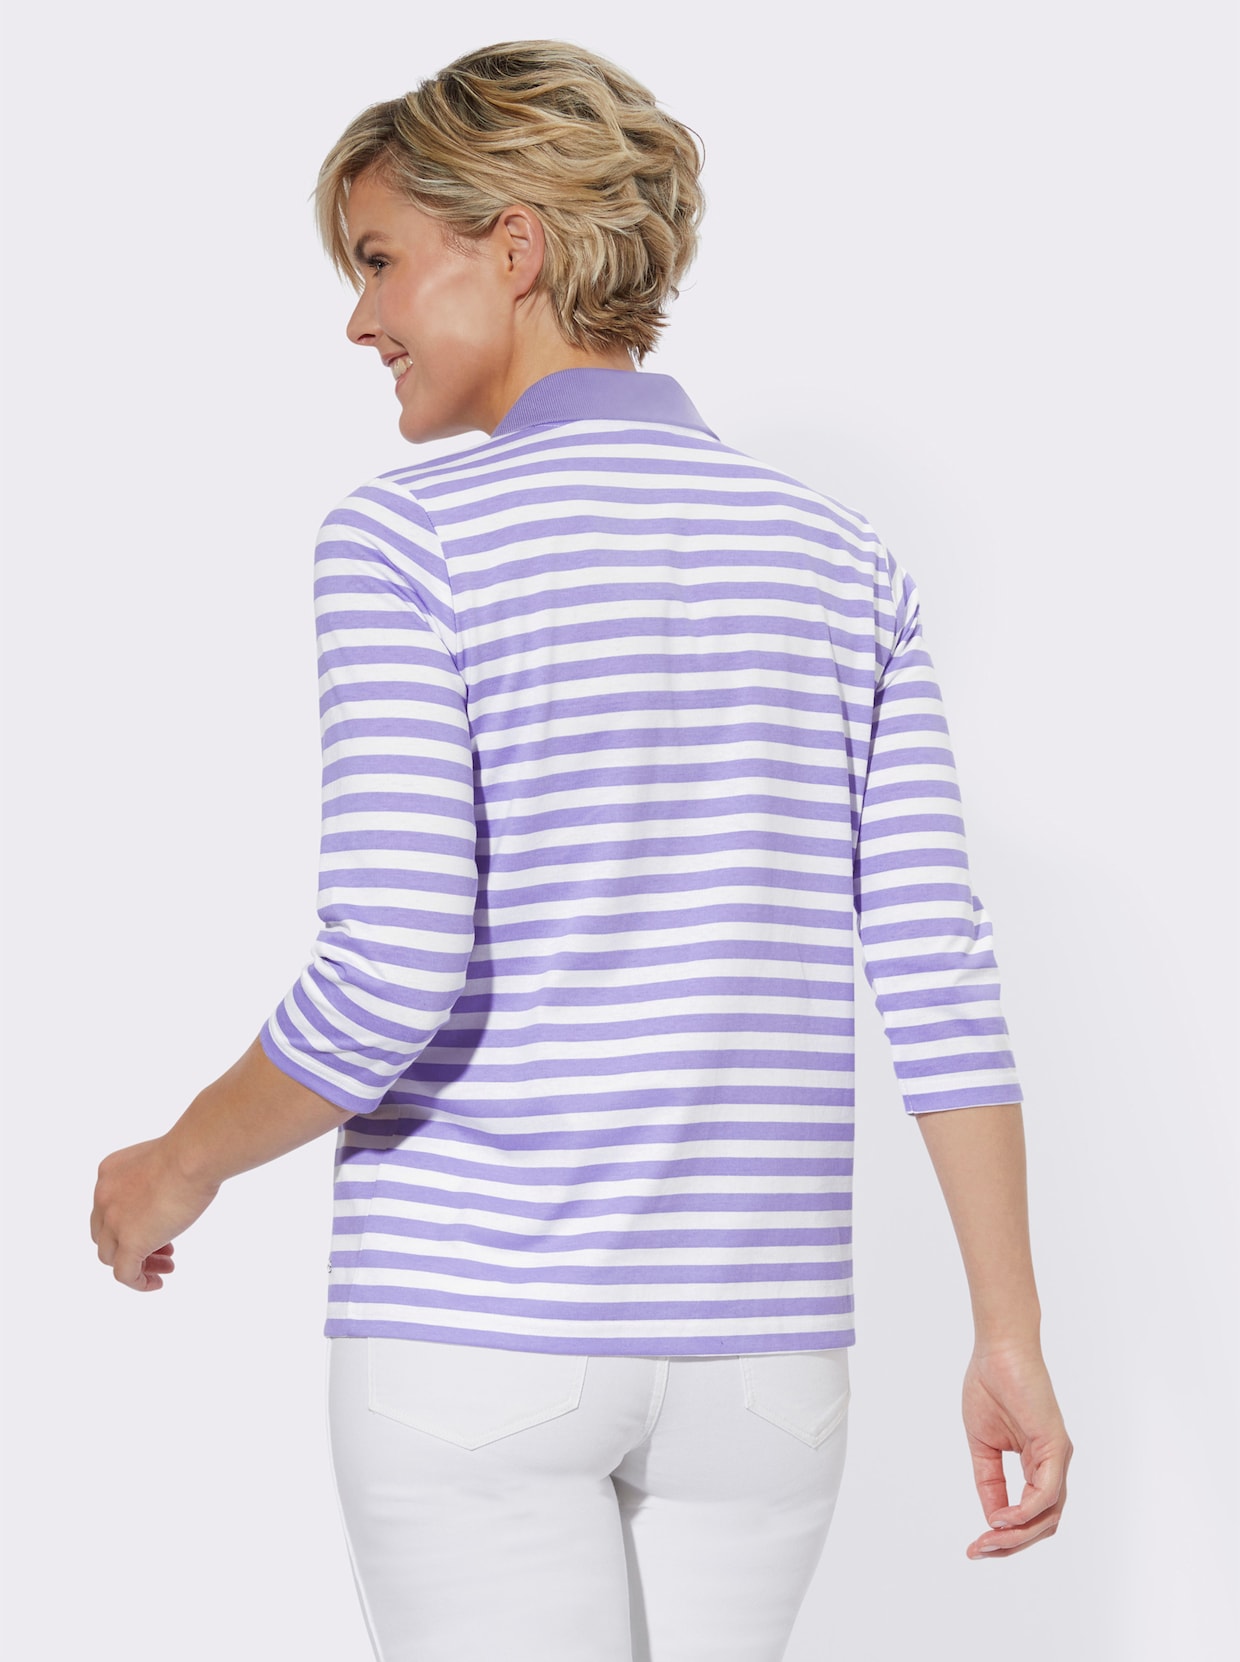 Poloshirt - lavendel-weiß-geringelt